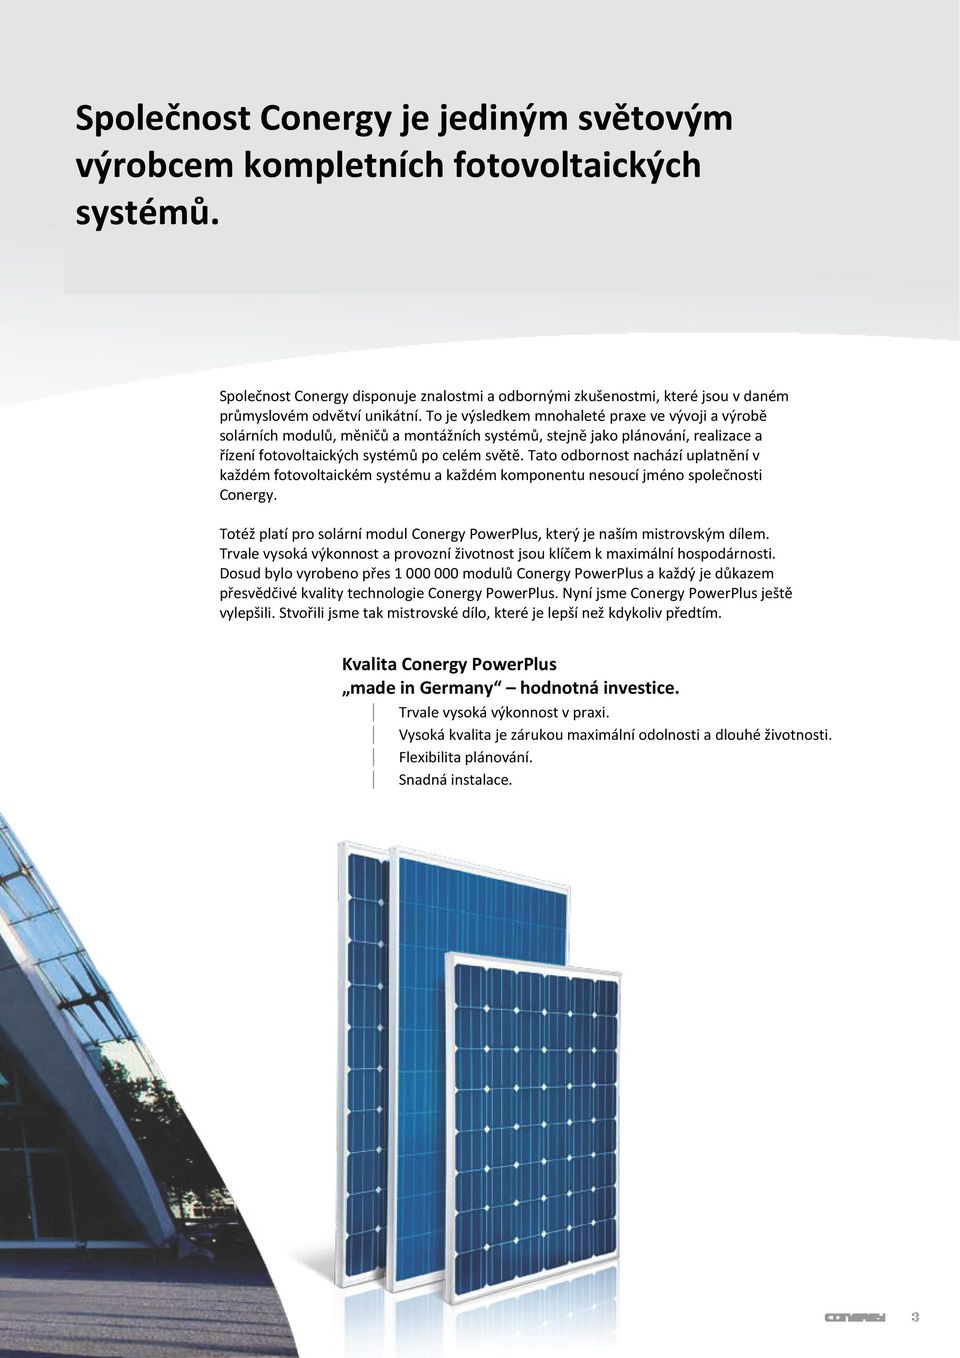 Tato odbornost nachází uplatnění v každém fotovoltaickém systému a každém komponentu nesoucí jméno společnosti Conergy.